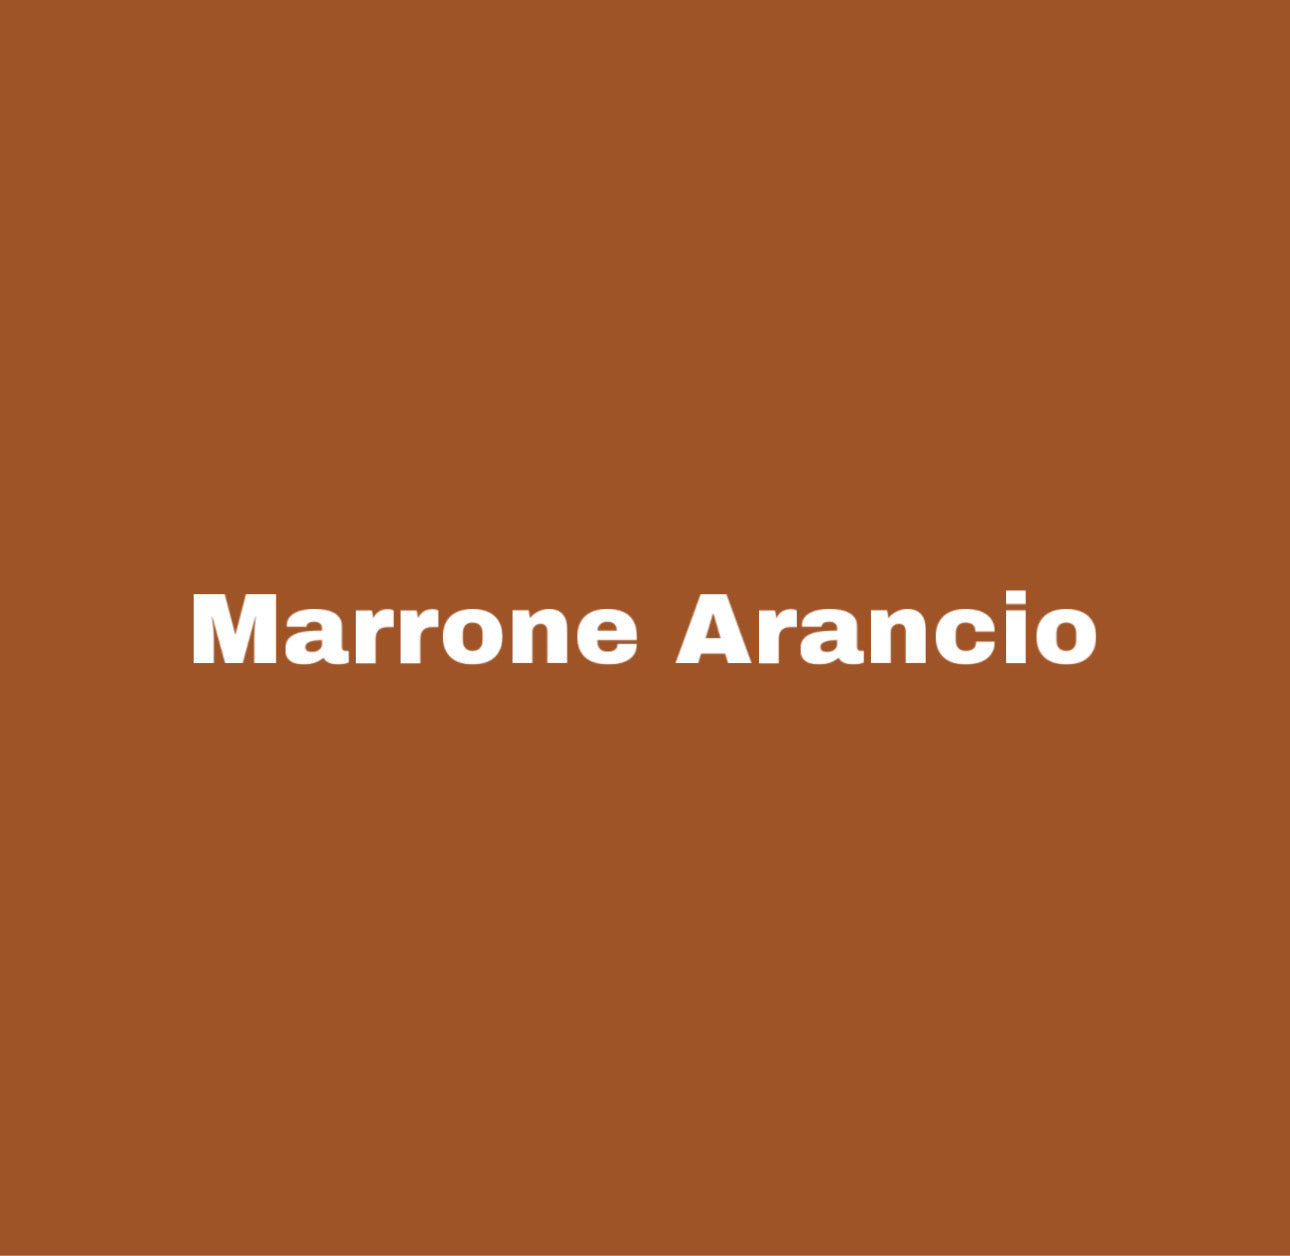 marronearancio-happycolor